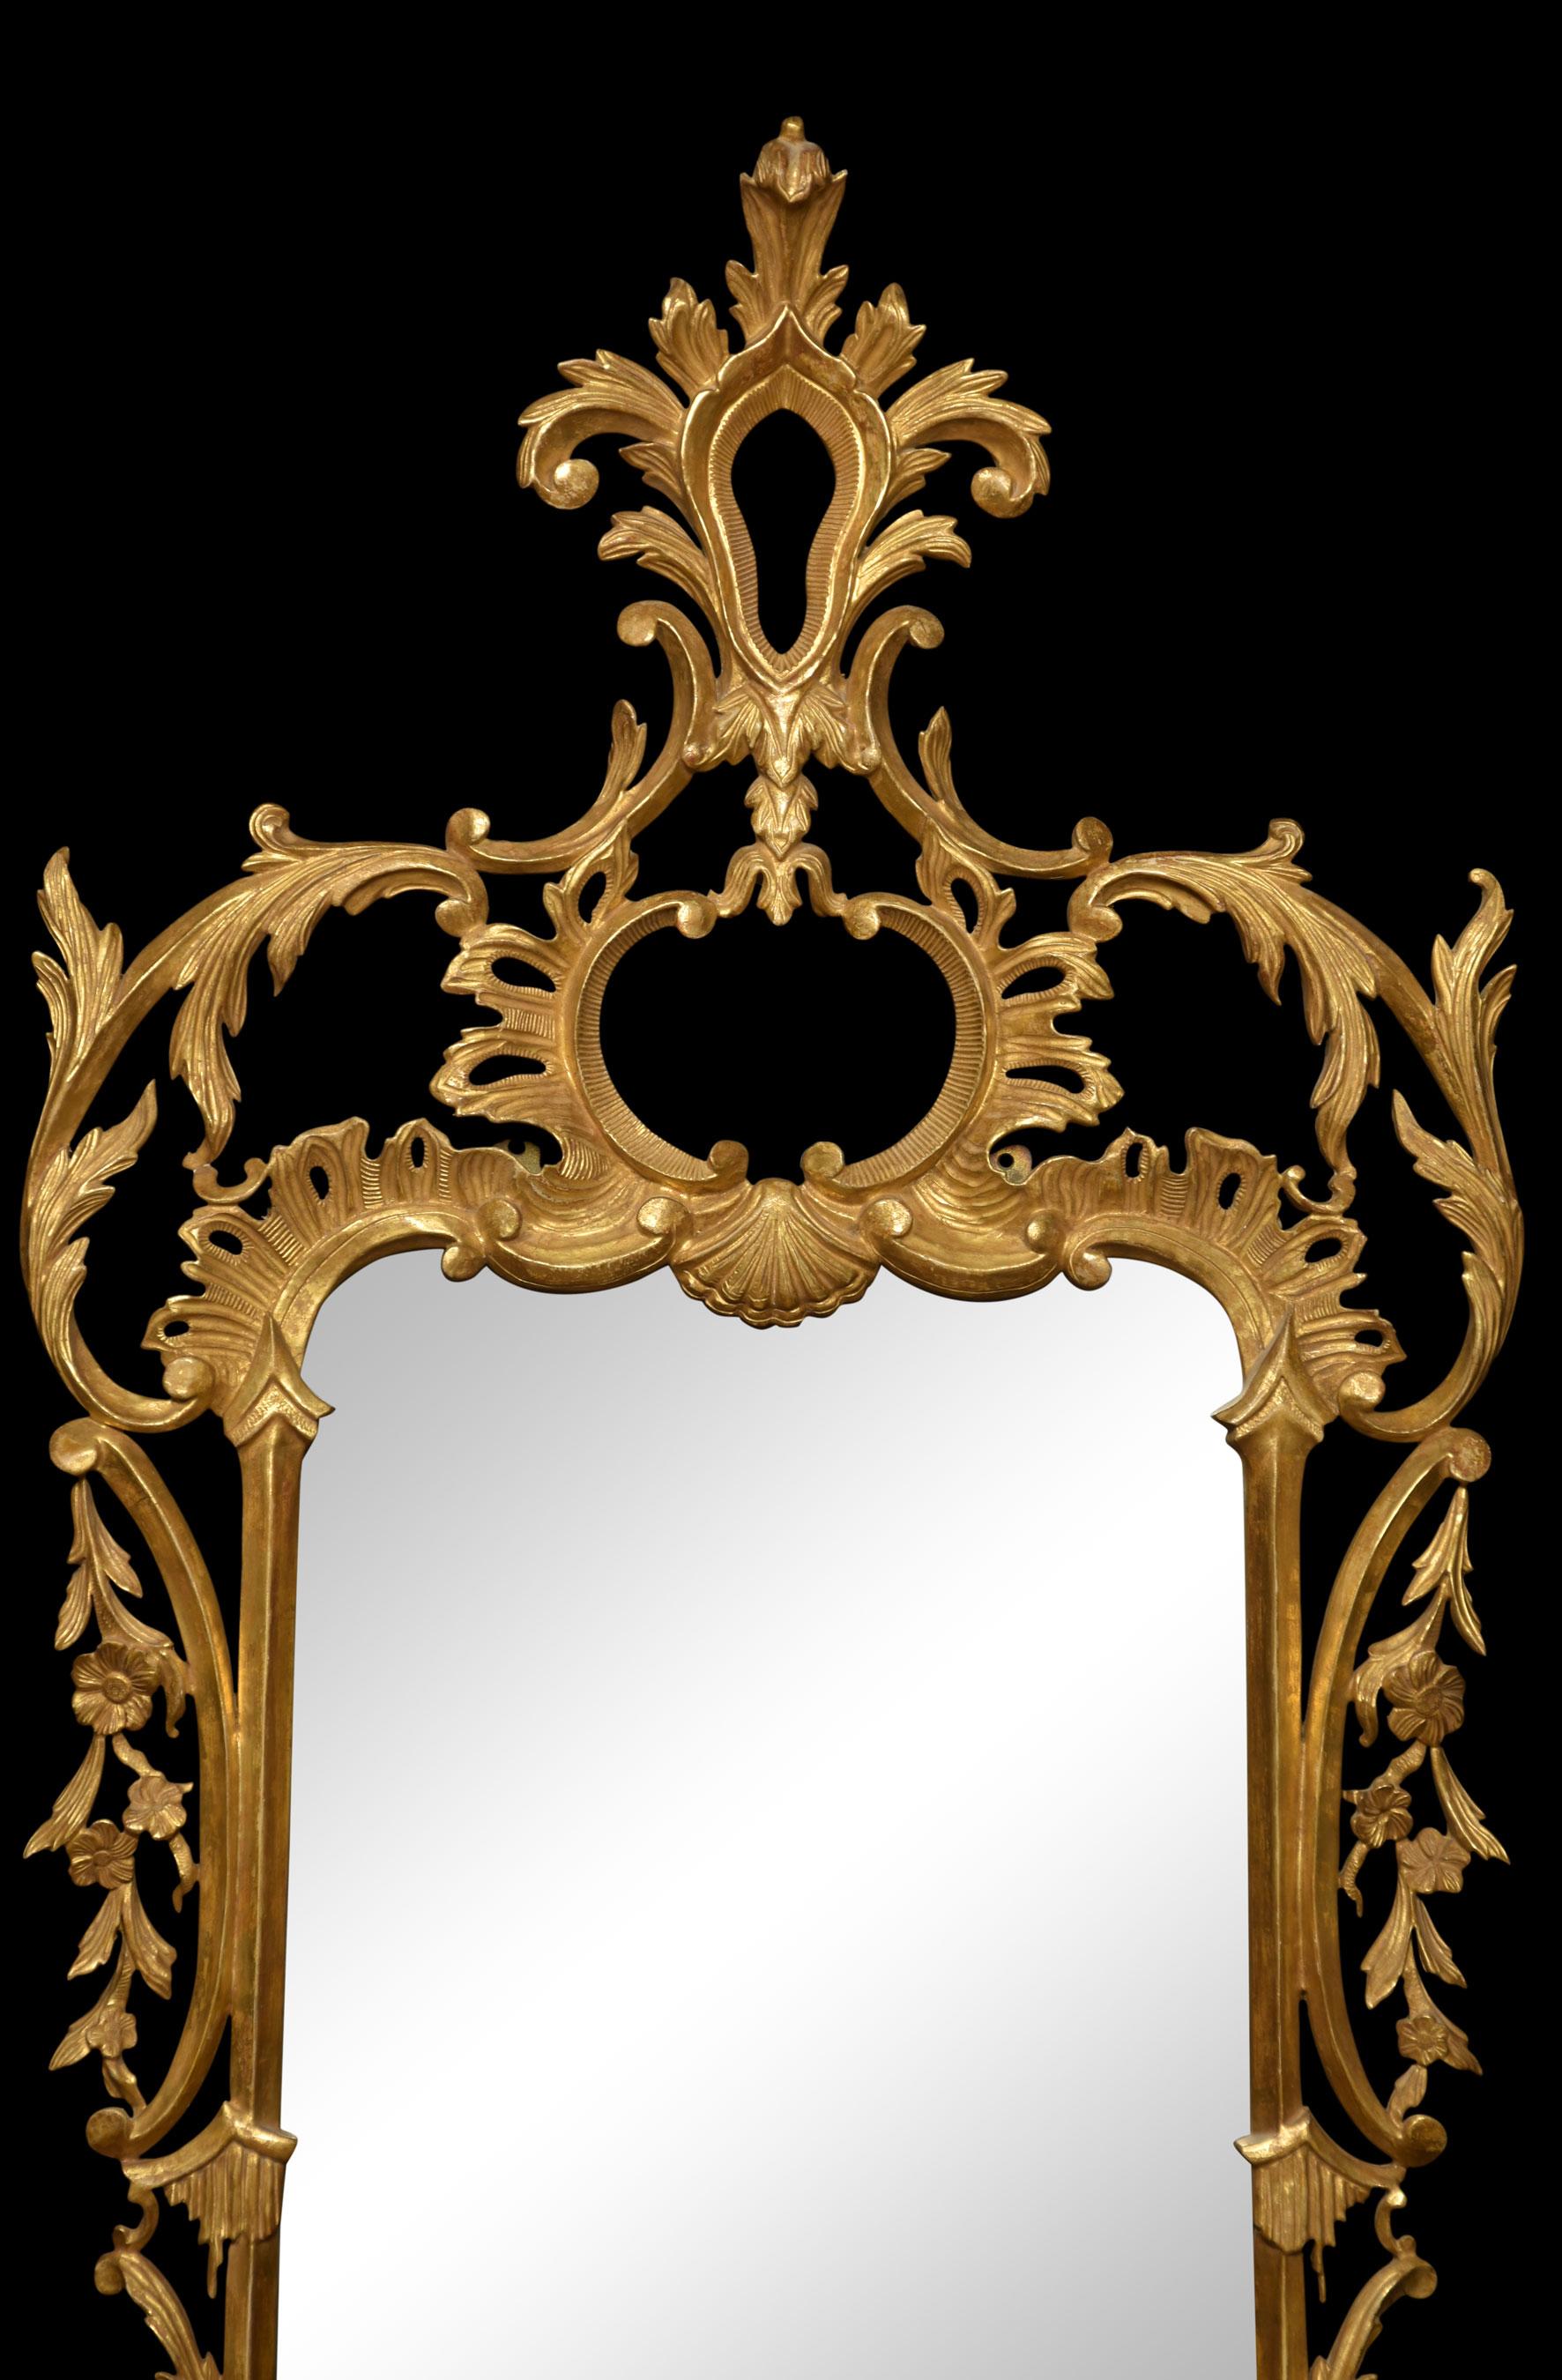 Spiegel aus vergoldetem Holz im georgianischen Stil. Der originale, kartuschenförmige, abgeschrägte Tellerspiegel befindet sich in einem passenden Rahmen, der mit Rocaille und C-Rollen verziert ist.
Abmessungen
Höhe 58,5 Zoll
Breite 26